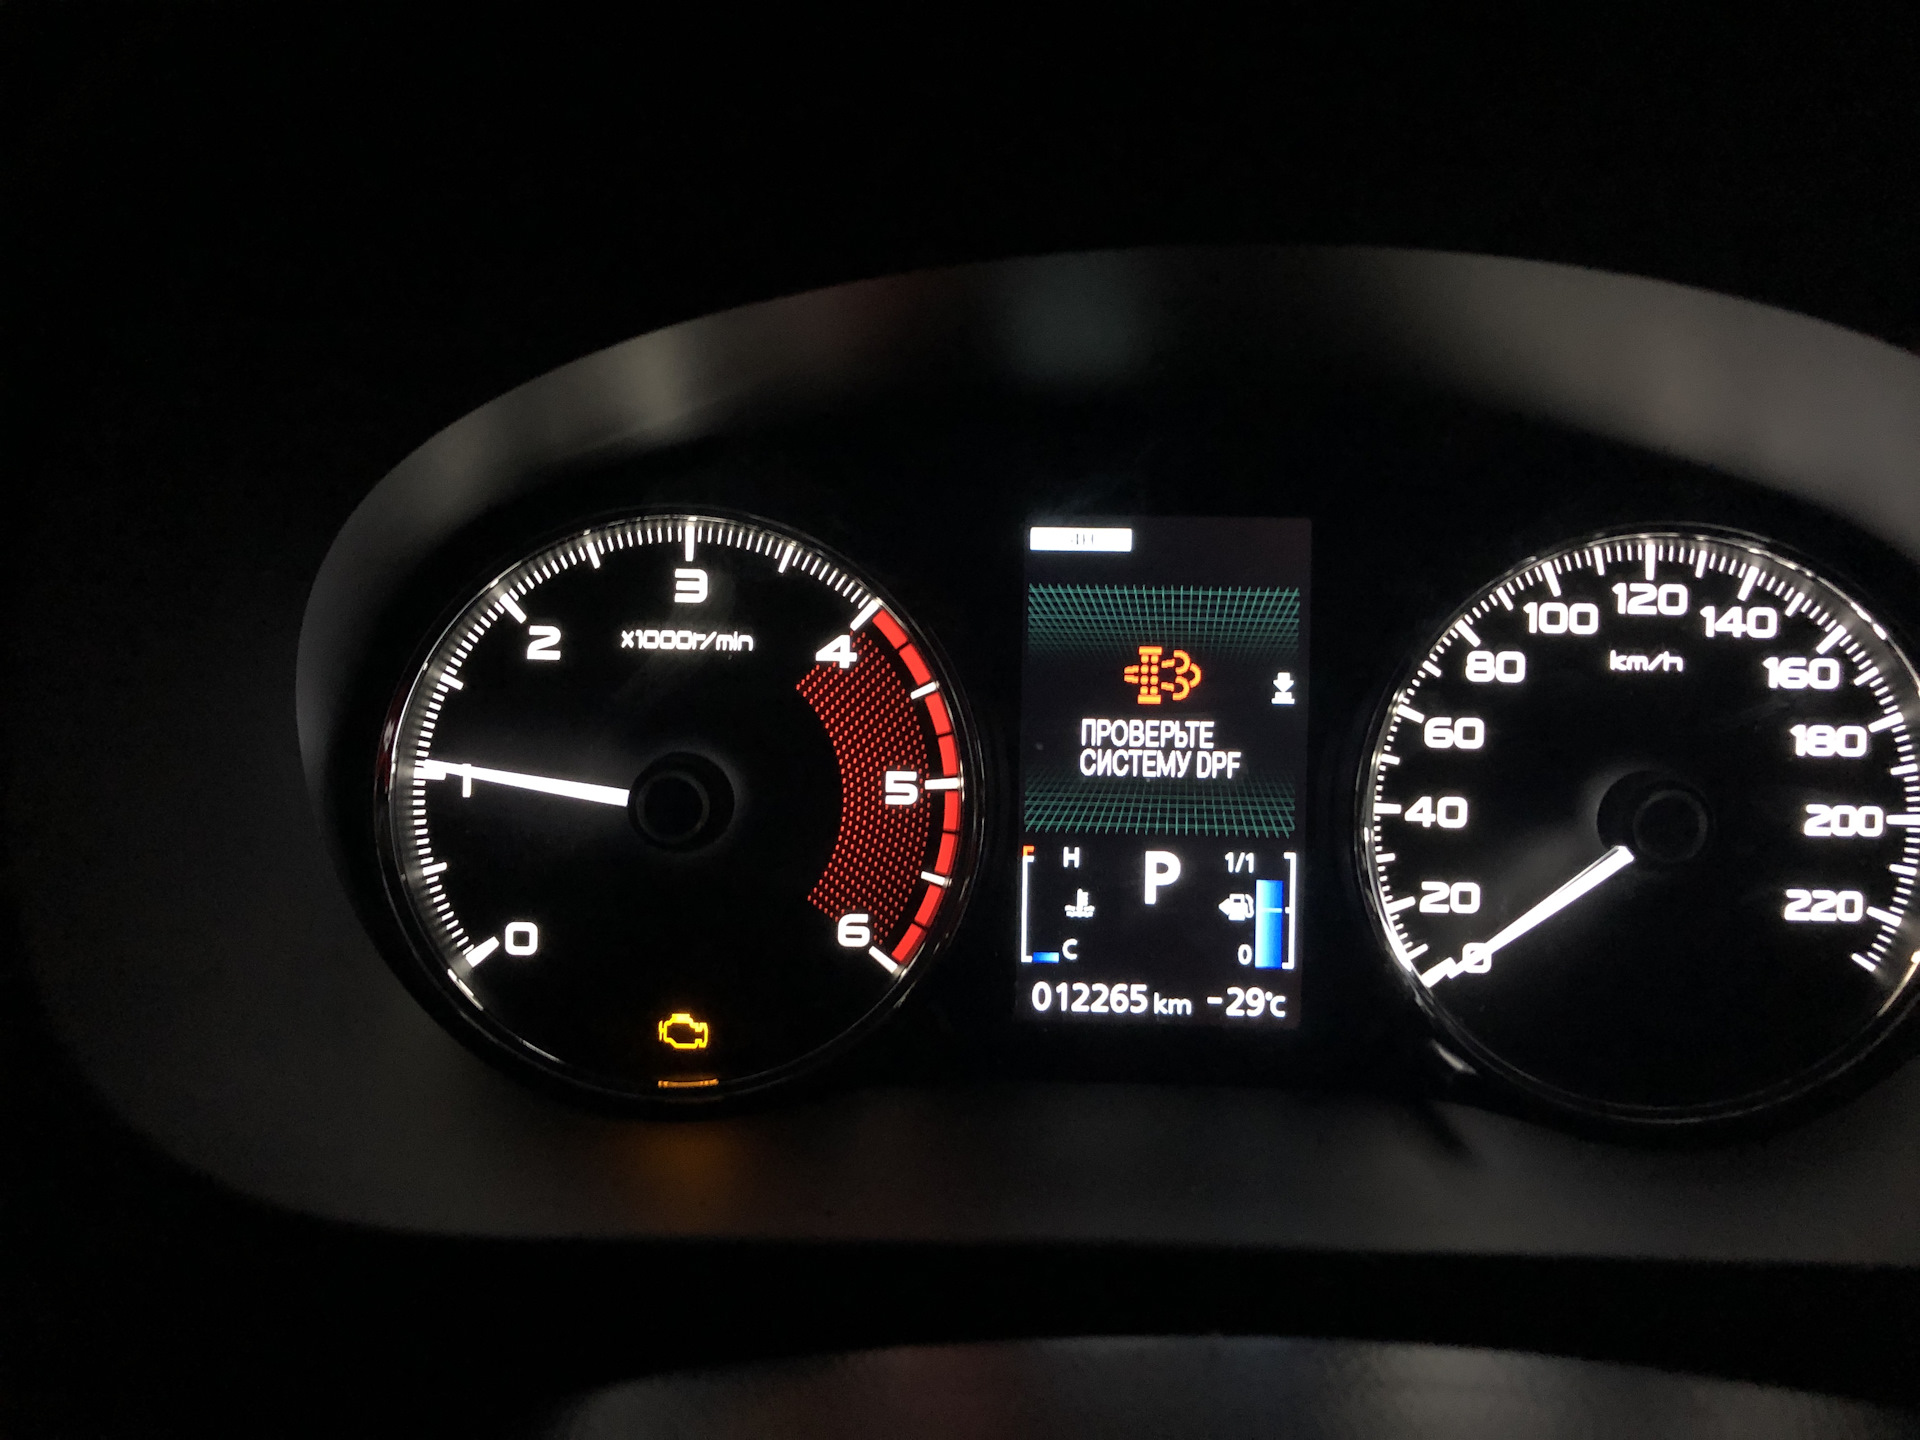 Проверьте Систему Dpf — Mitsubishi Pajero Sport, 2.4 Л., 2019 Года На Drive2